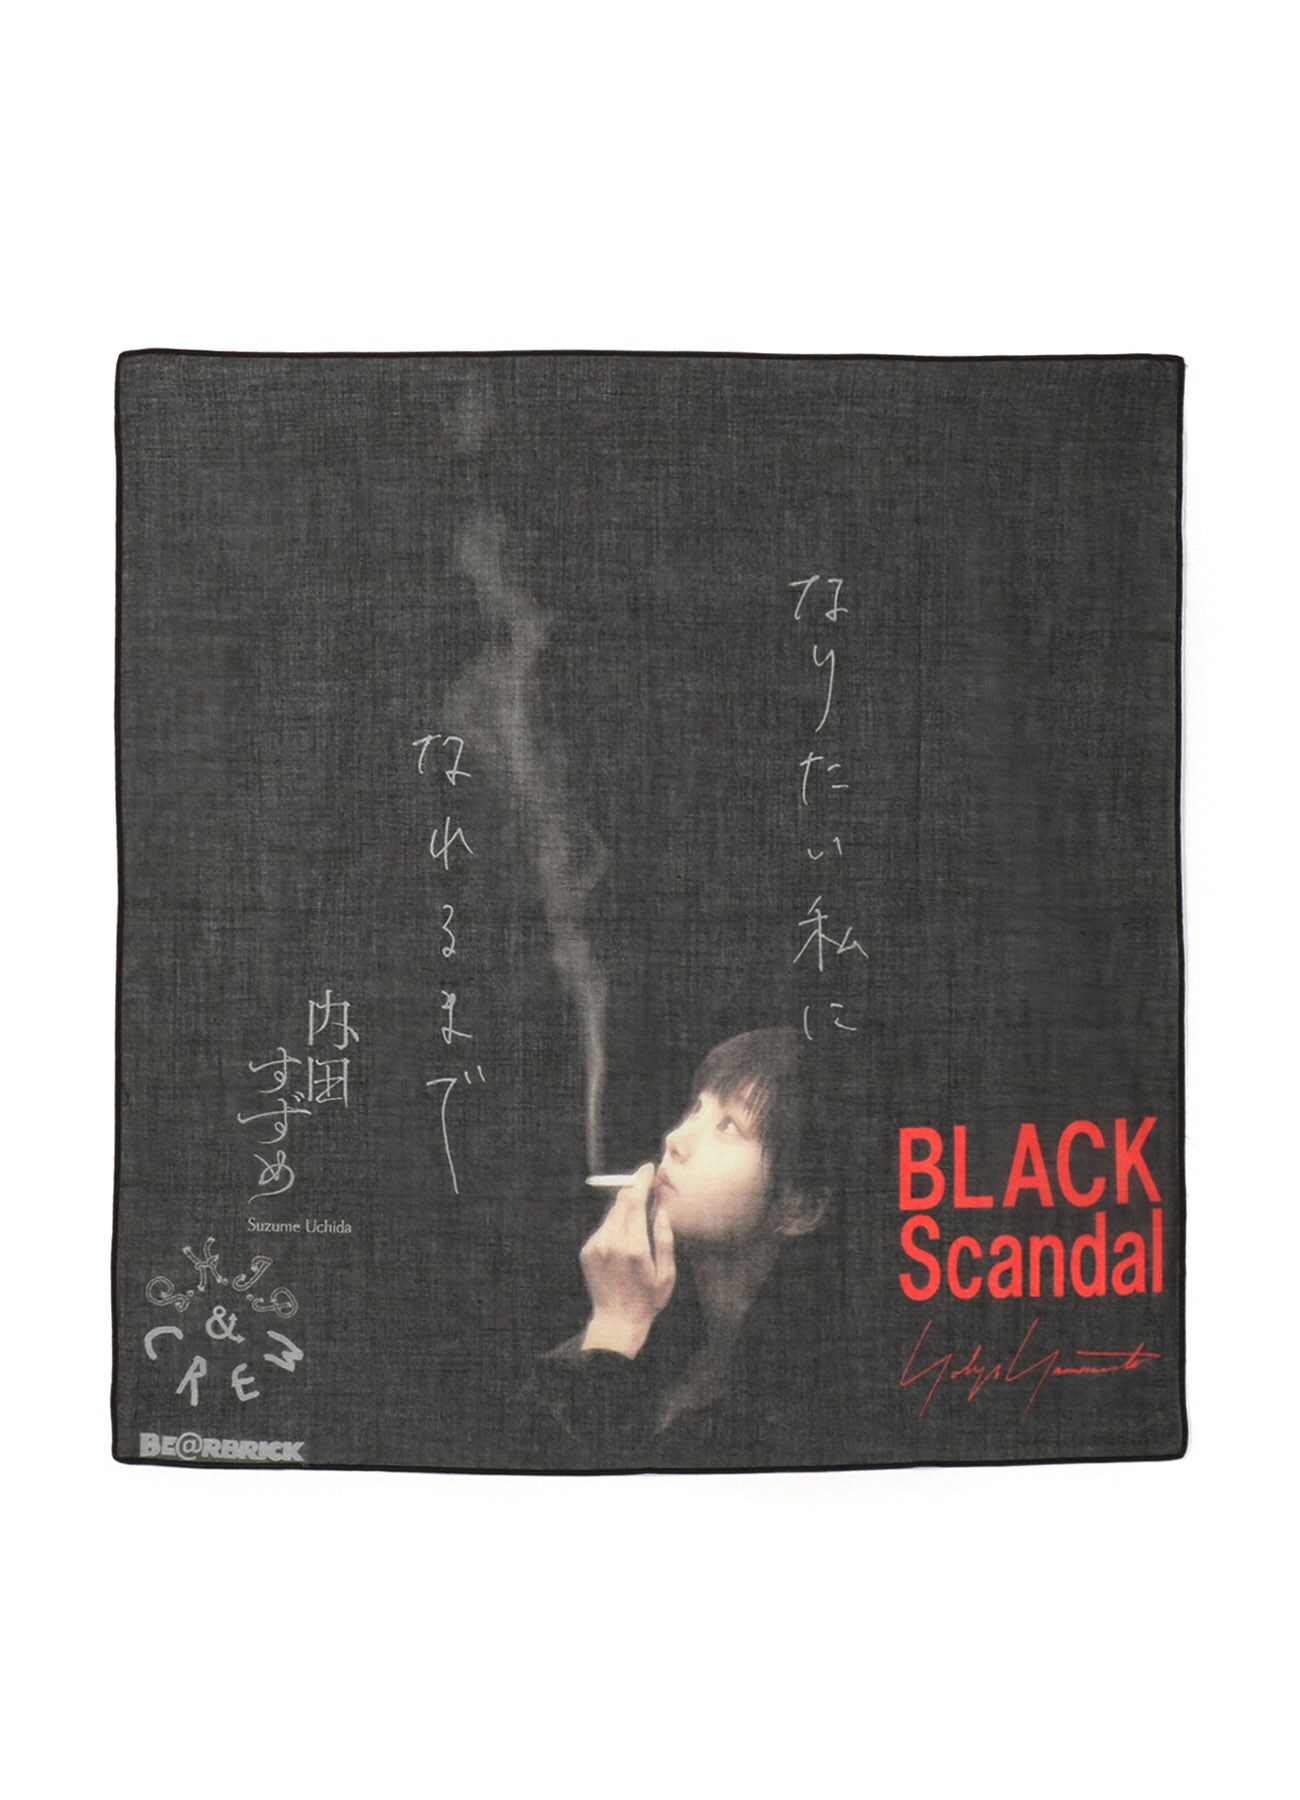 BE@RBRICK BLACK Scandal Yohji Yamamoto × 内田すずめ × S.H.I.P&crew なりたい私になれるまで HANDKERCHIEF.2